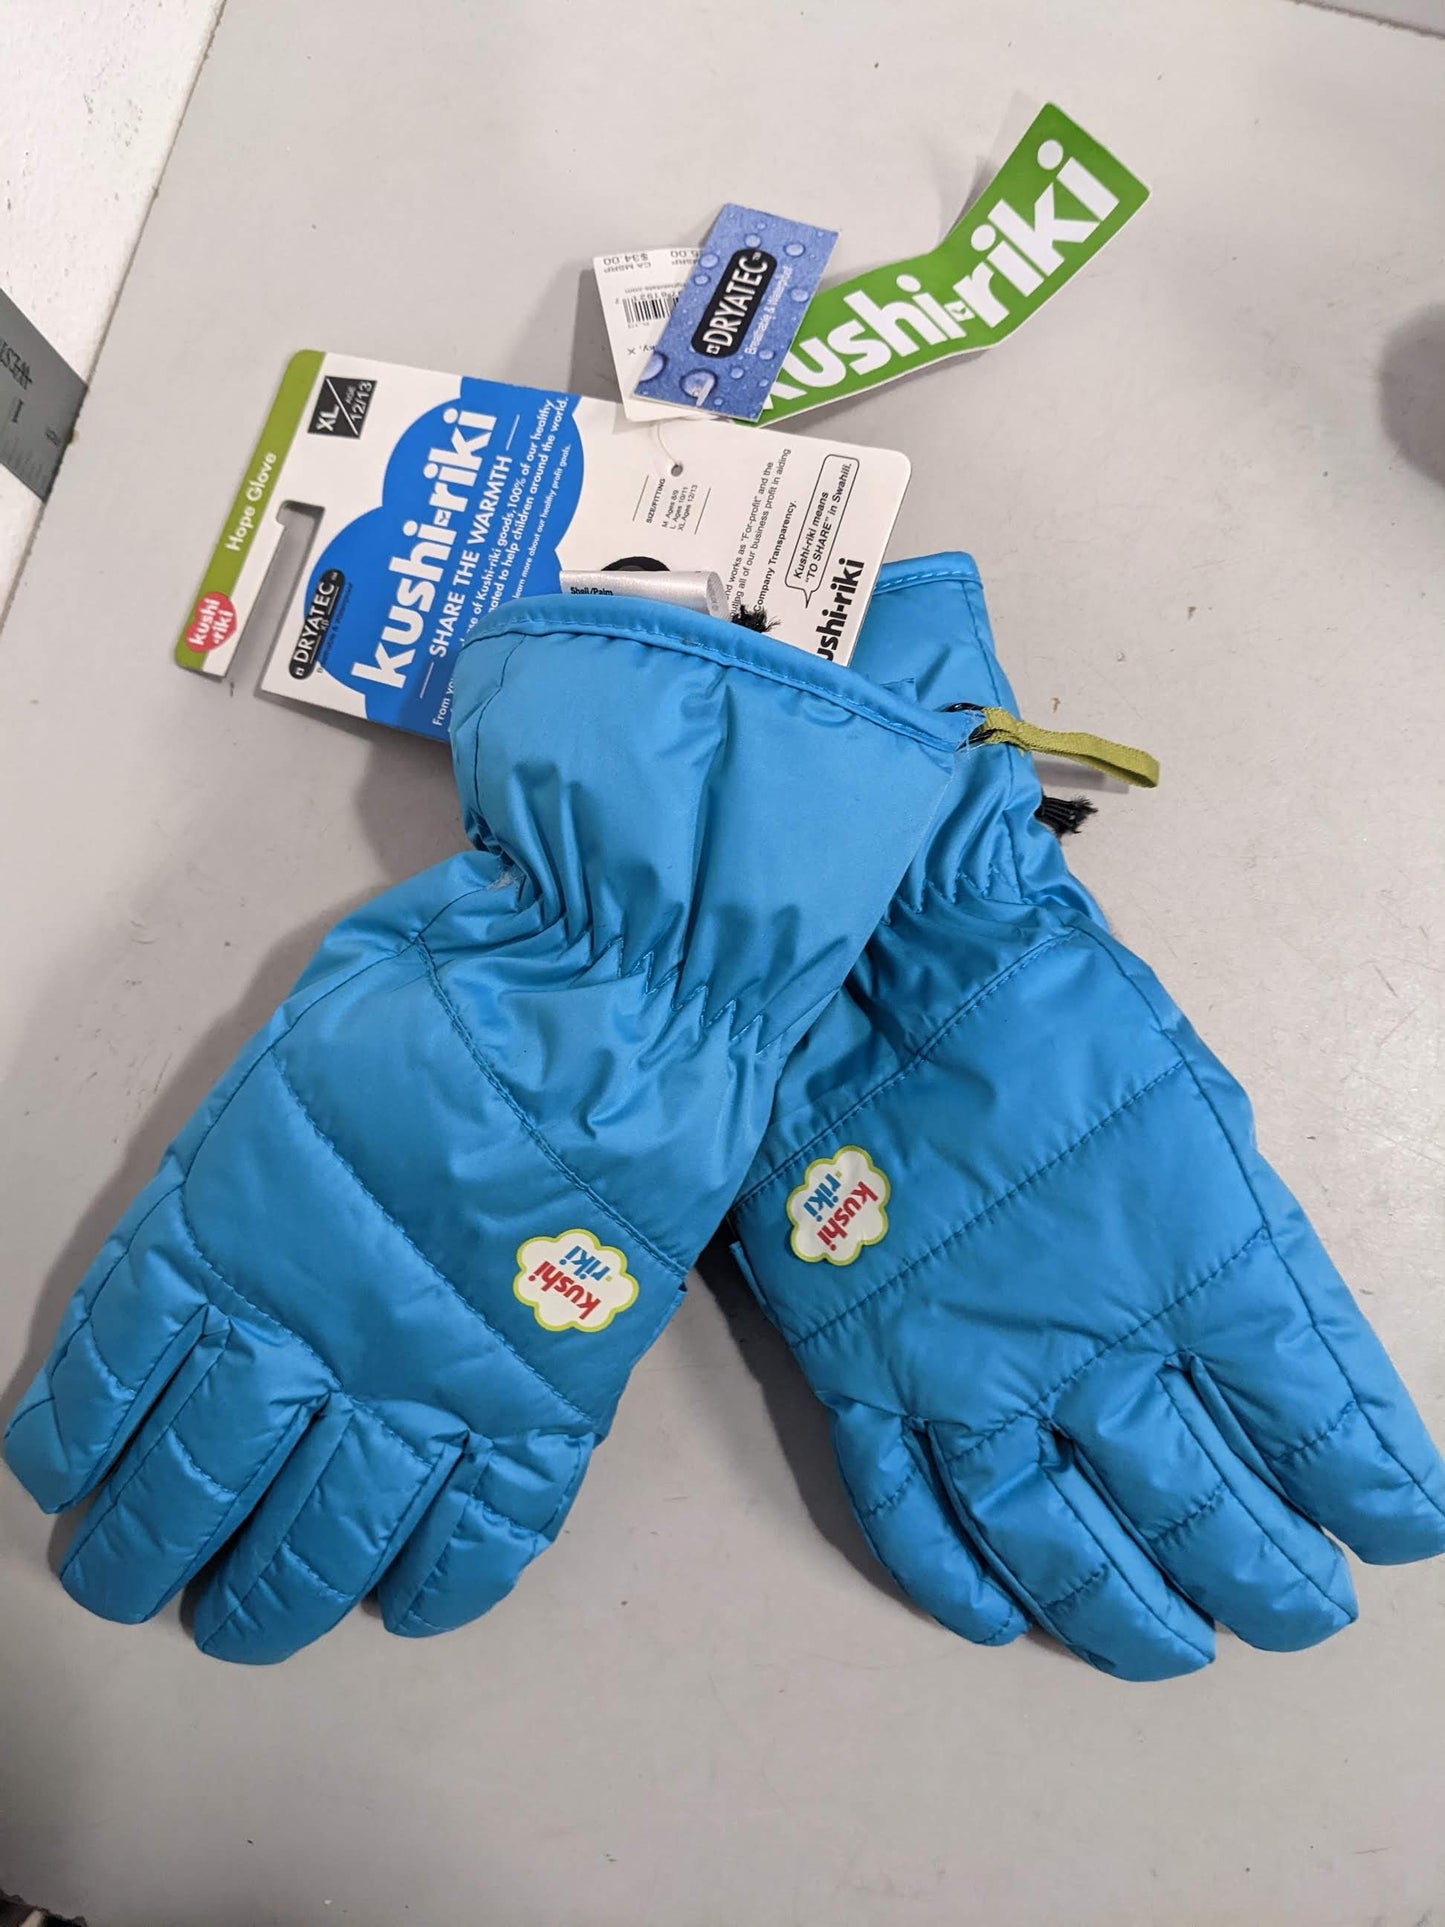 Kushi Riki  Hope Gloves Youth XL Blue NEW